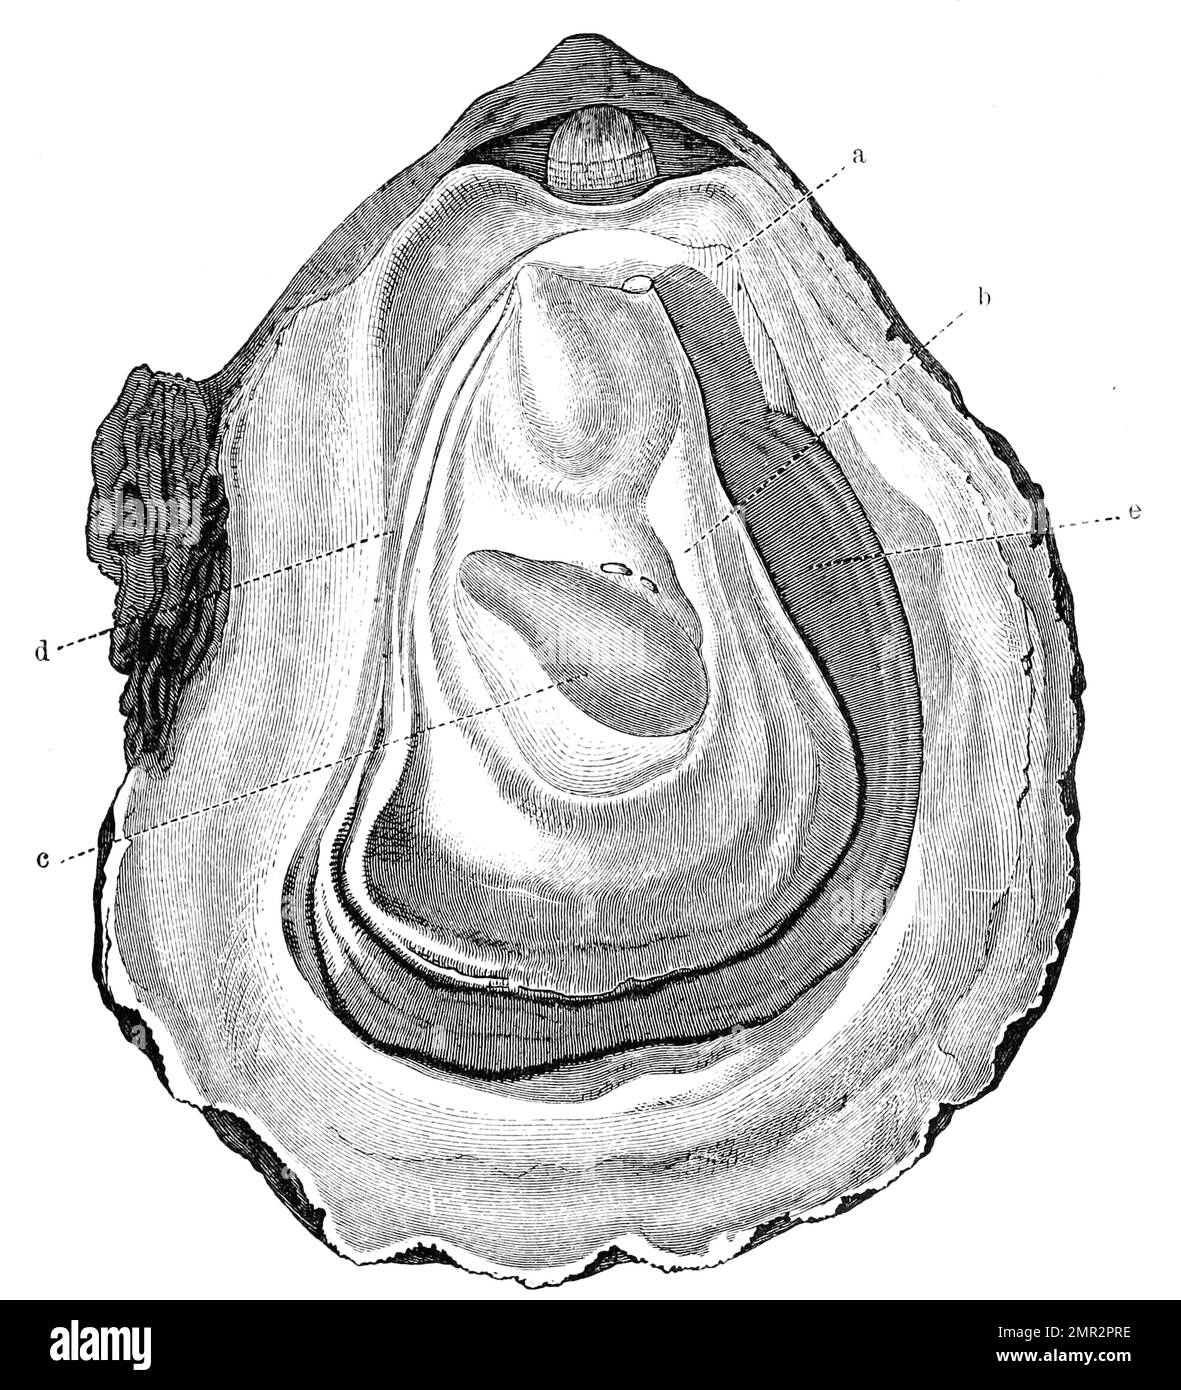 Geöffnete Auster, Pazifische Auster, Magallana gigas, SYN. Crassostrea gigas, auch Pazifische Felsenauster, Historisch, digitale Restaurierte Reproduktion von einer Vorlage aus dem 19. Hundert Stockfoto